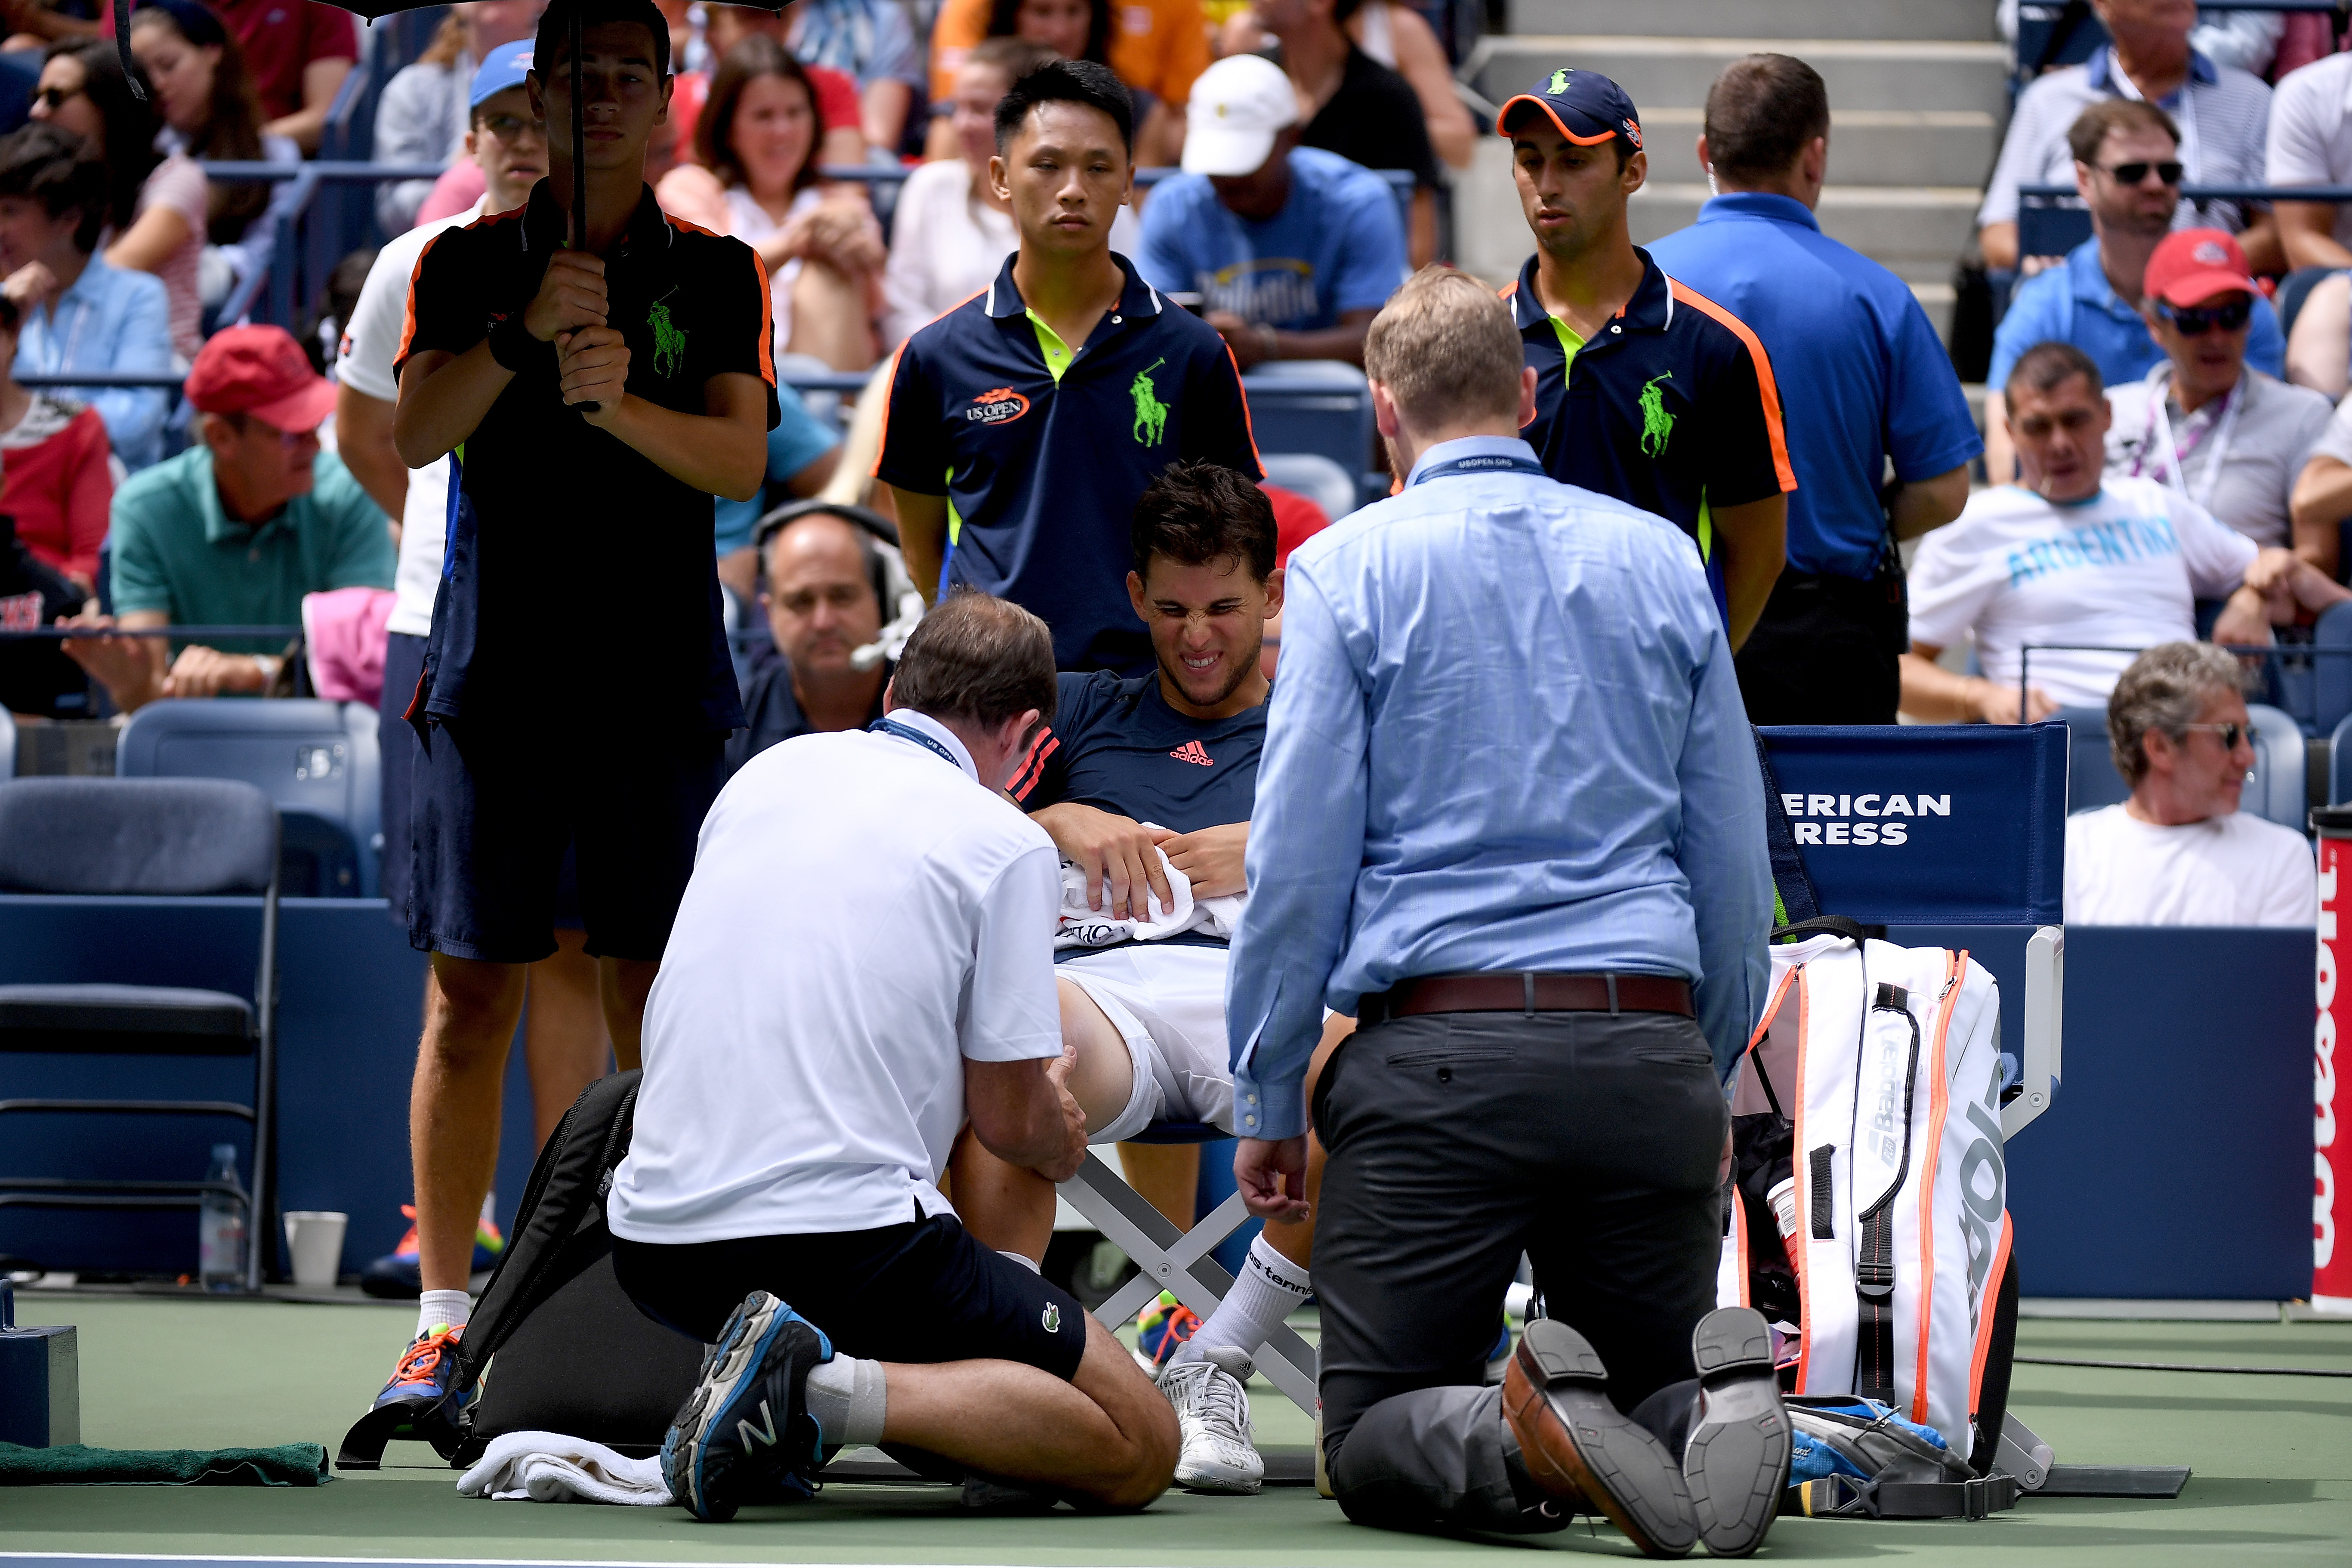 Dominic Thiem fue atendido por el médico justo antes de retirarse del partido.